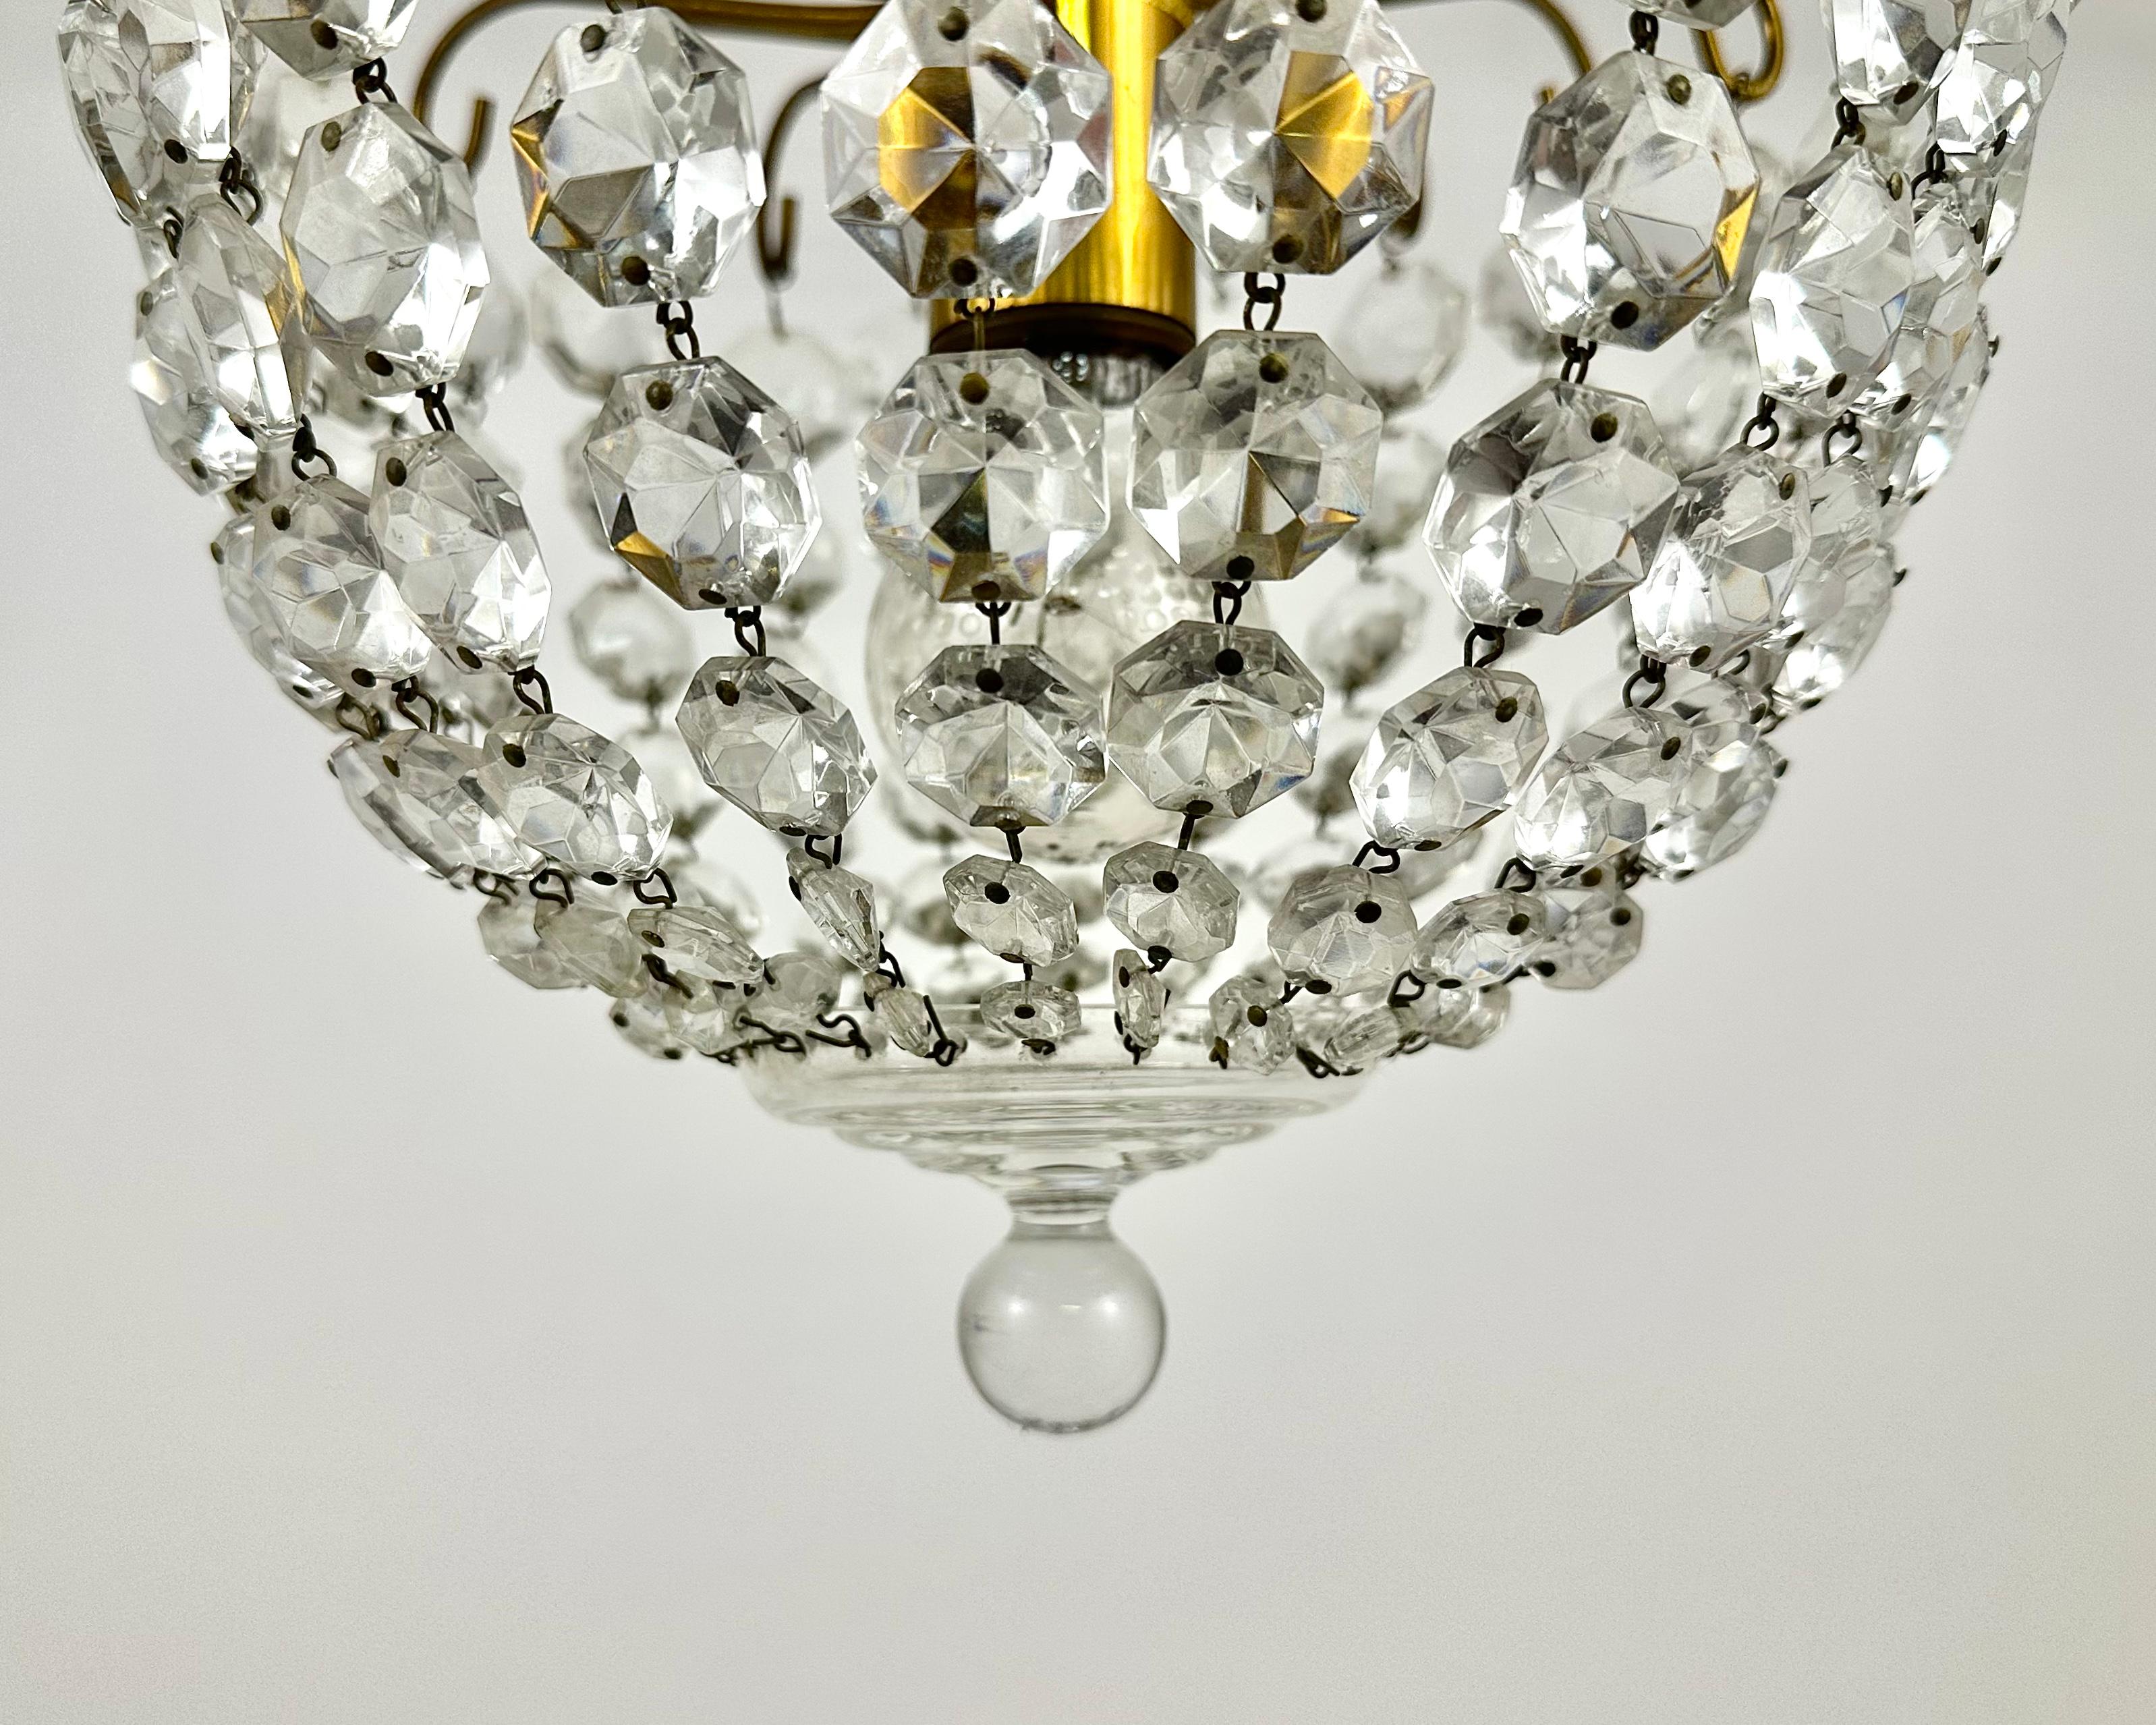 Vintage Crystal and Brass Chandelier für 1 Lichtpunkt.

Hergestellt in Frankreich.

Wir präsentieren Ihnen einen atemberaubenden Deckenleuchter, der zu einer echten Dekoration Ihres Interieurs wird.

Dieser schöne Kronleuchter hat einen klassischen